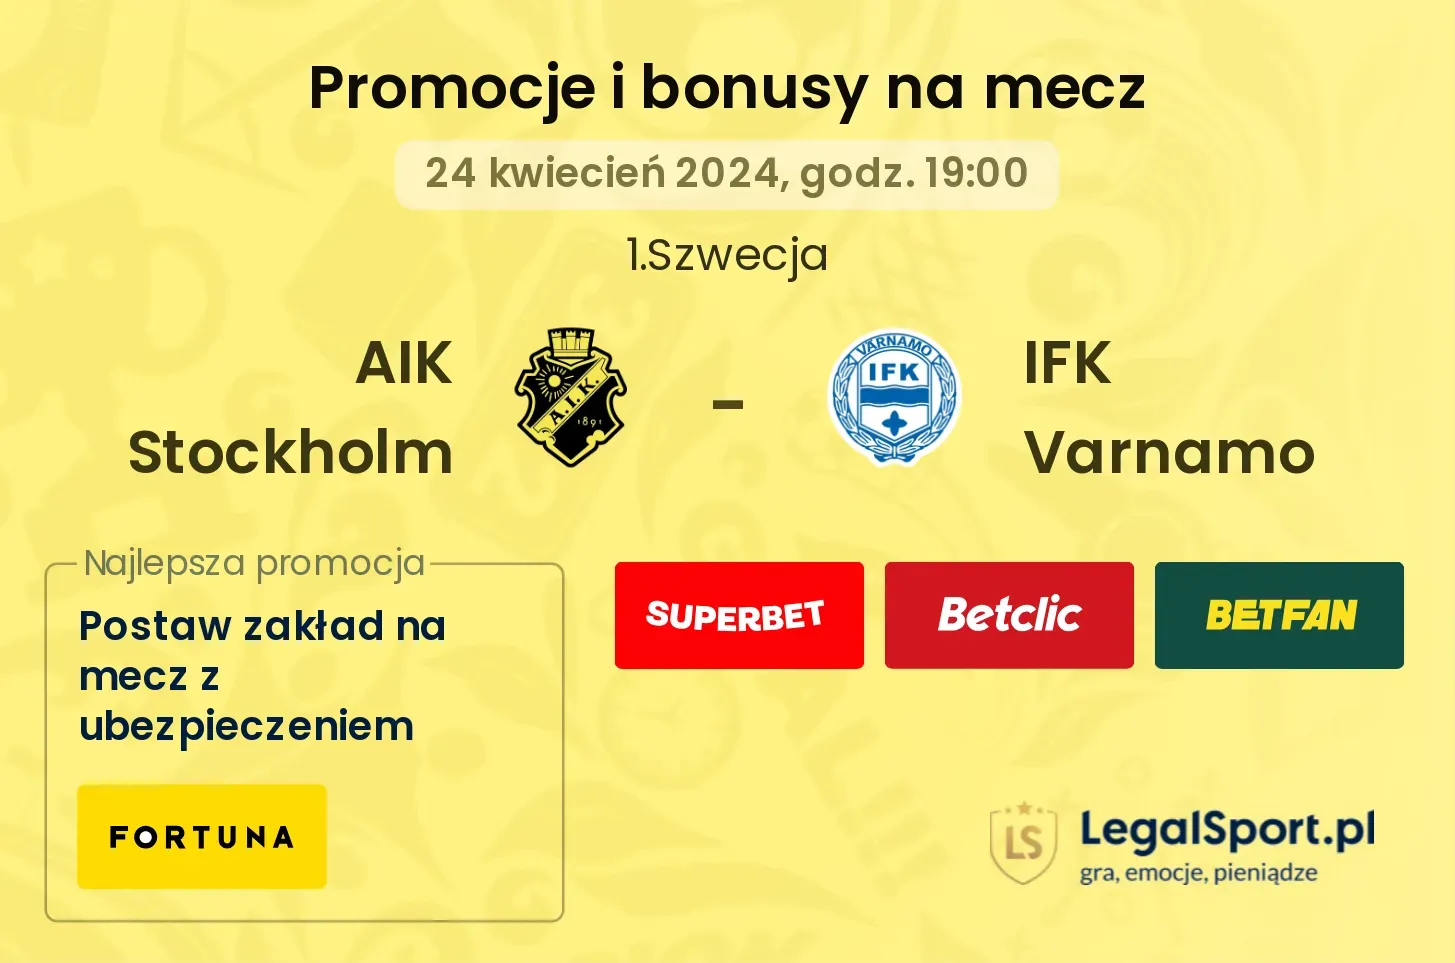 AIK Stockholm - IFK Varnamo promocje bonusy na mecz